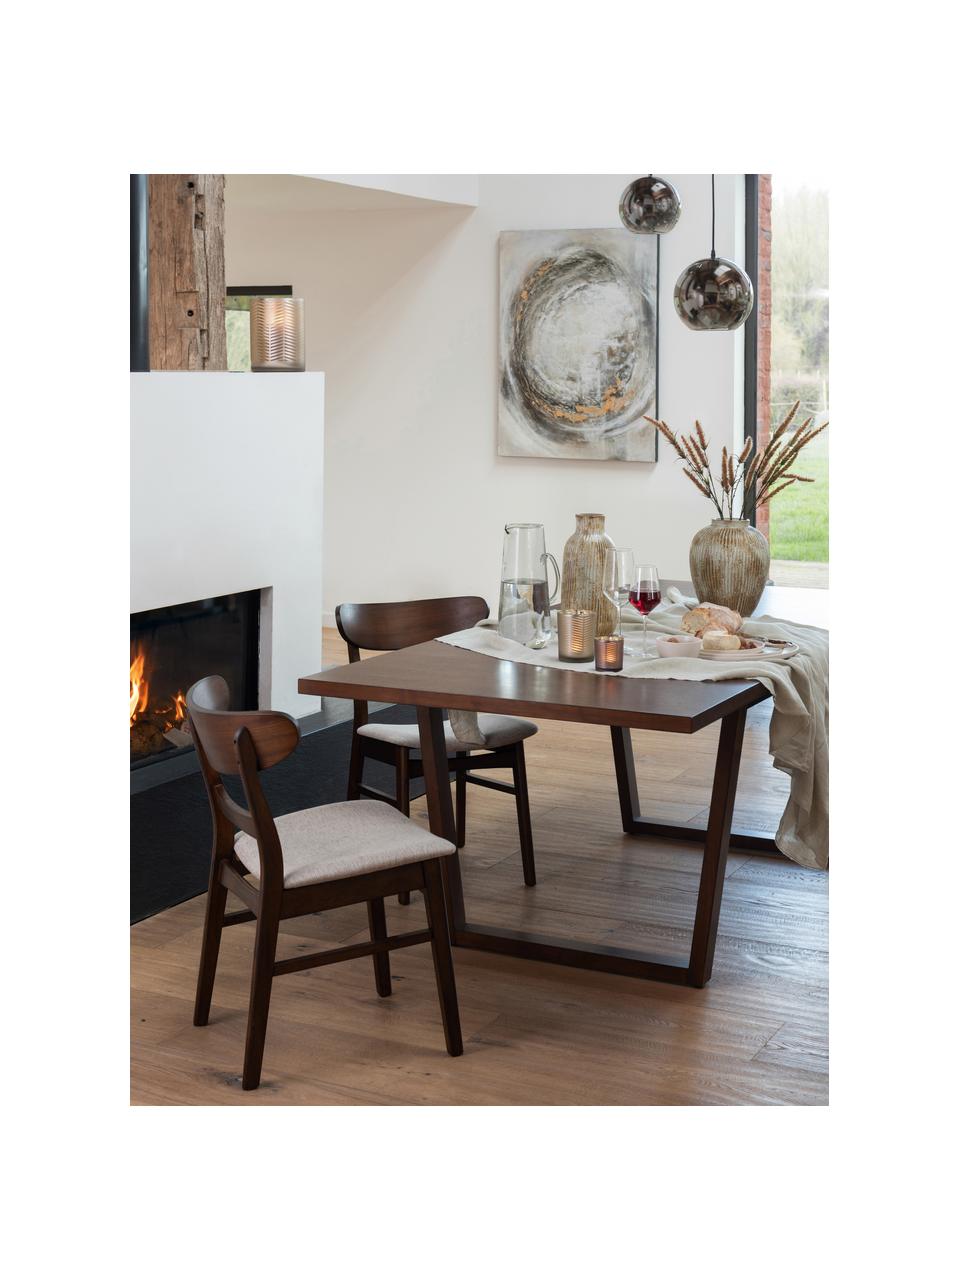 Dřevěná židle s čalouněným sedákem Ken, Hnědá, béžová, Š 57 cm, H 53 cm